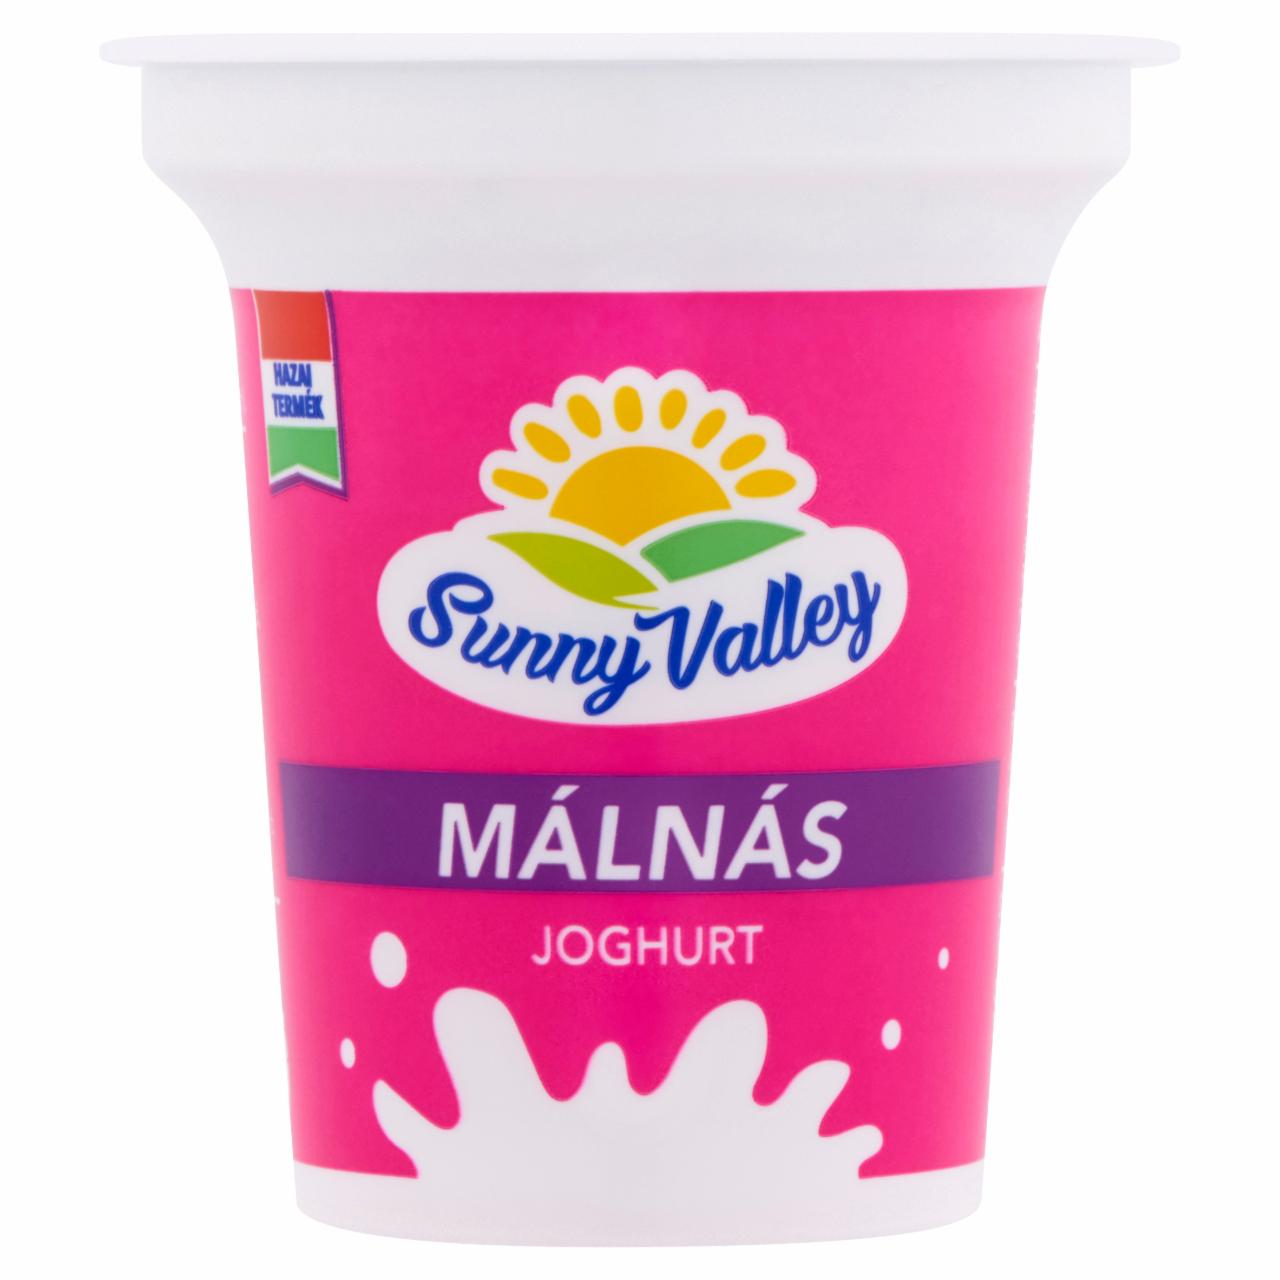 Képek - Sunny Valley élőflórás, zsírszegény málnás joghurt 140 g